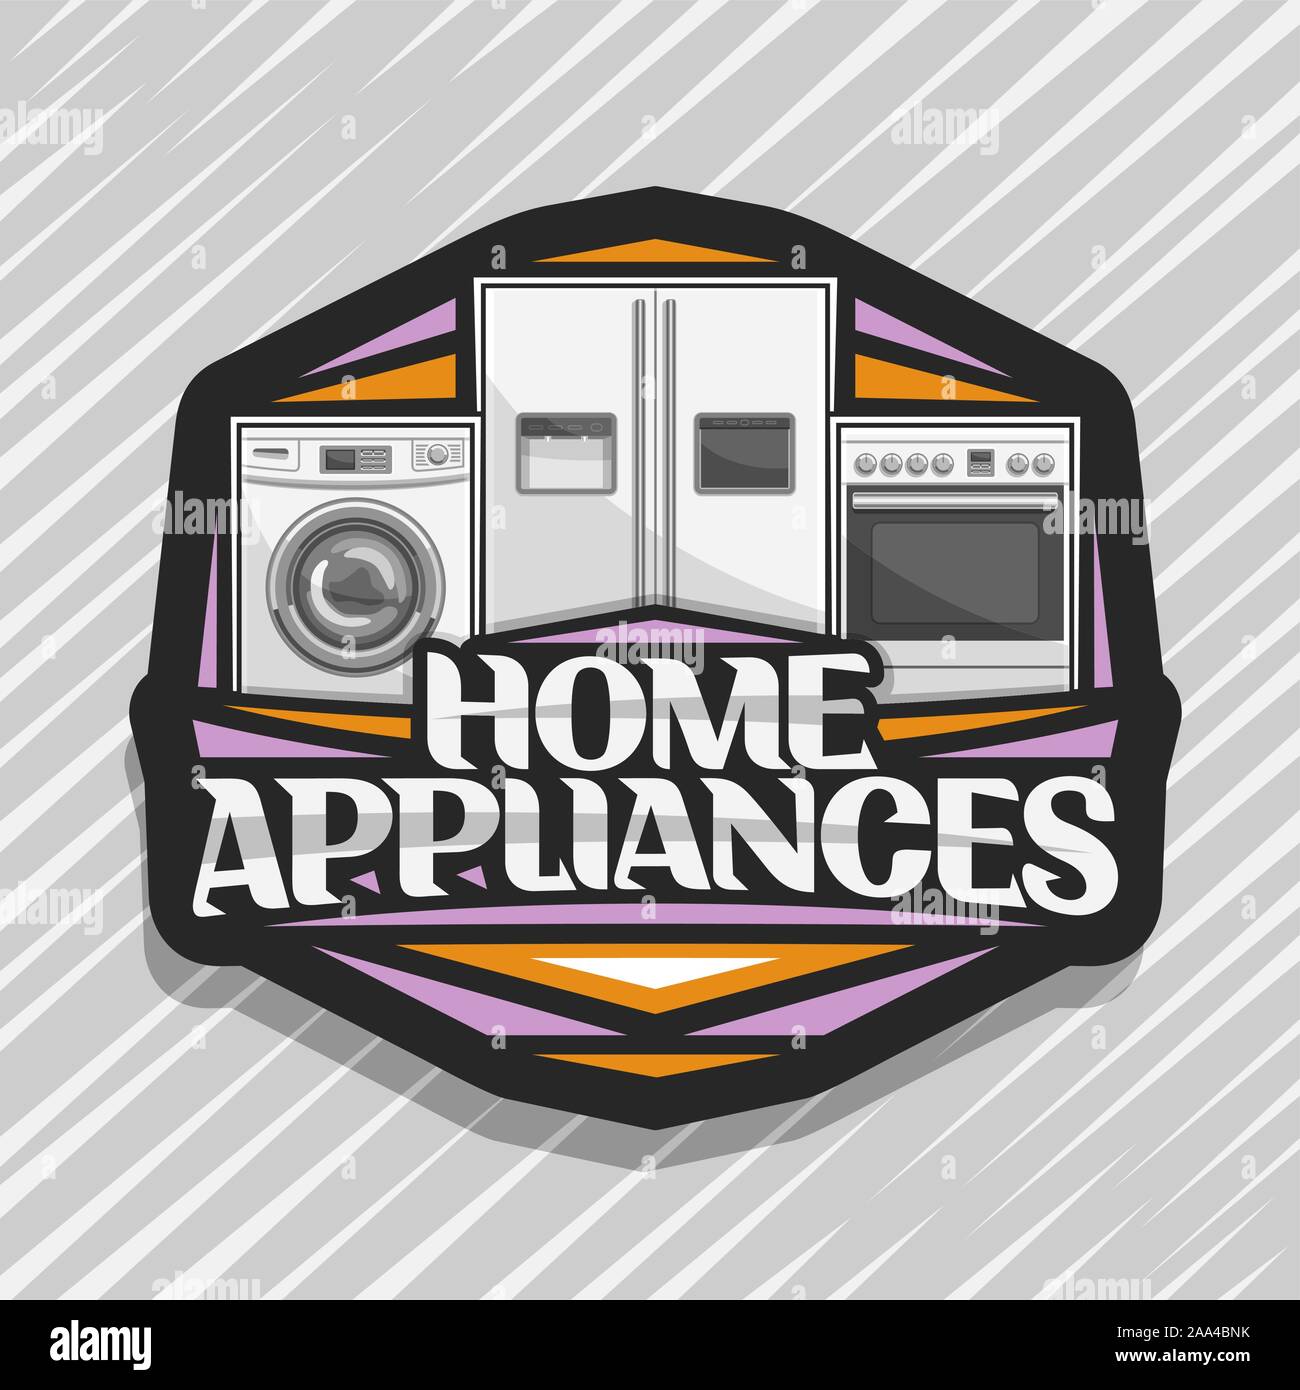 Vektor logo für Haushaltsgeräte, schwarzen Aufkleber mit Abbildung: Weiße Waschmaschine, großen Kühlschrank mit Bildschirm, Elektroherd, original letteri Stock Vektor